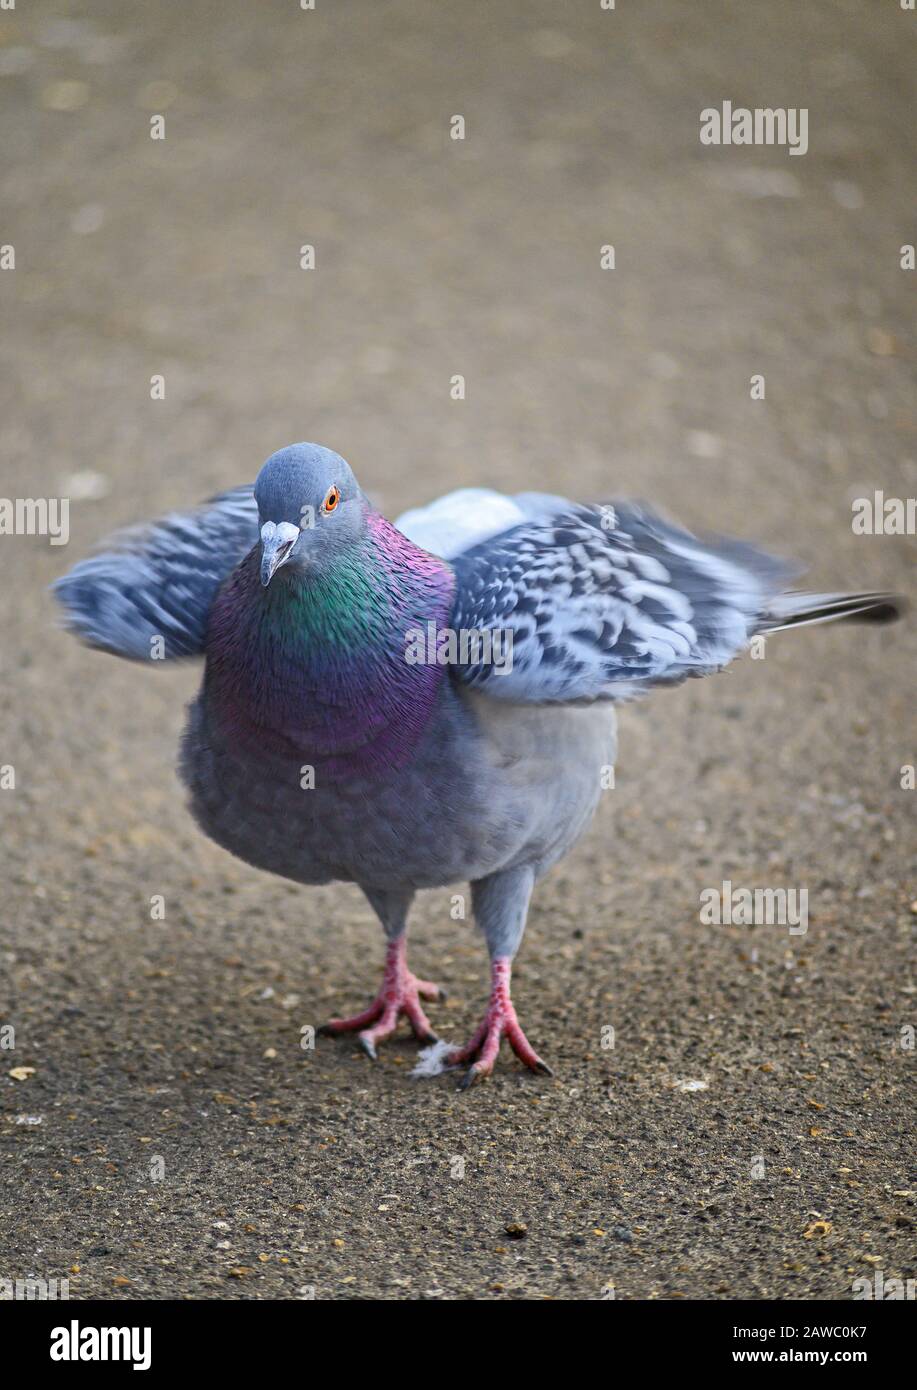 Rock colombe (Columba livia) ou pigeon commun ou pigeon feral à Kelsey Park, Beckenham, Londres, Royaume-Uni. La colombe (pigeon) ruffe ses plumes. Banque D'Images